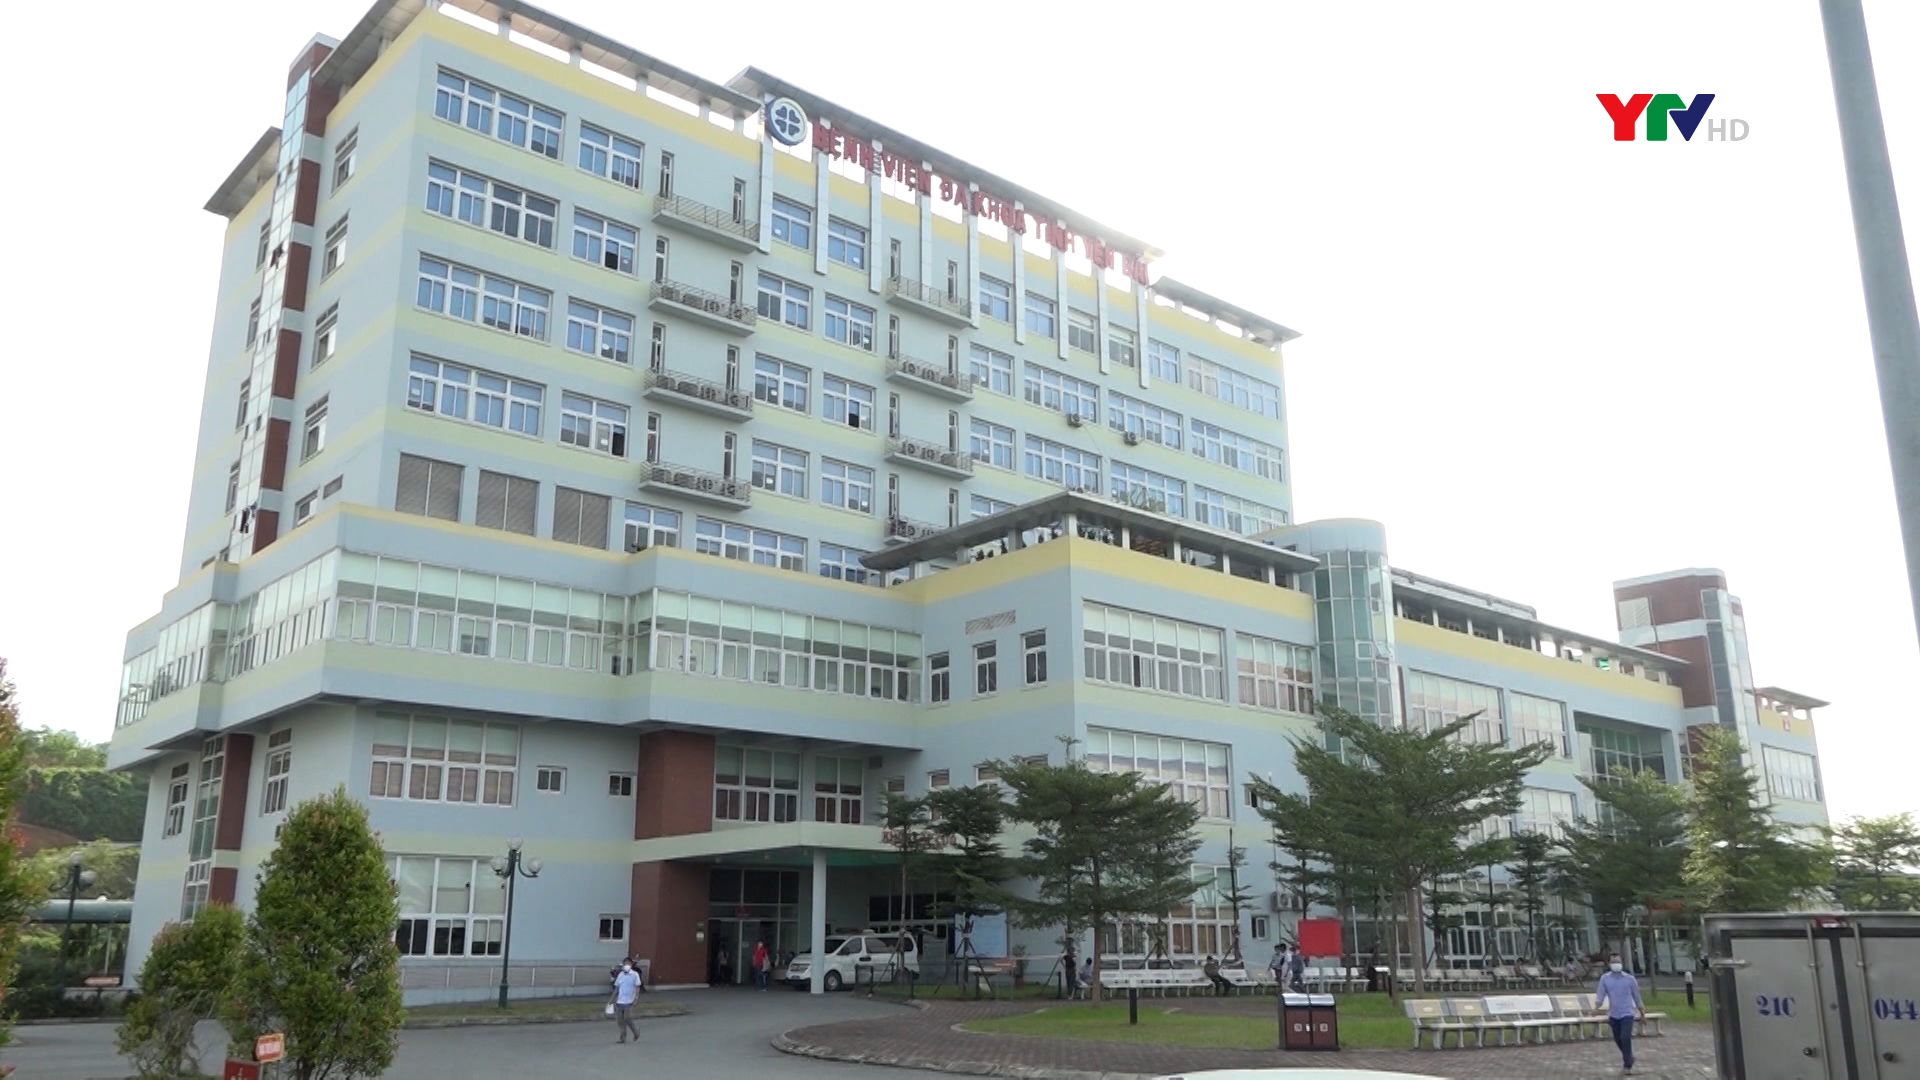 Bệnh viện Đa khoa tỉnh - Đơn vị dẫn đầu của ngành y tế tỉnh Yên Bái về chuyển đổi số